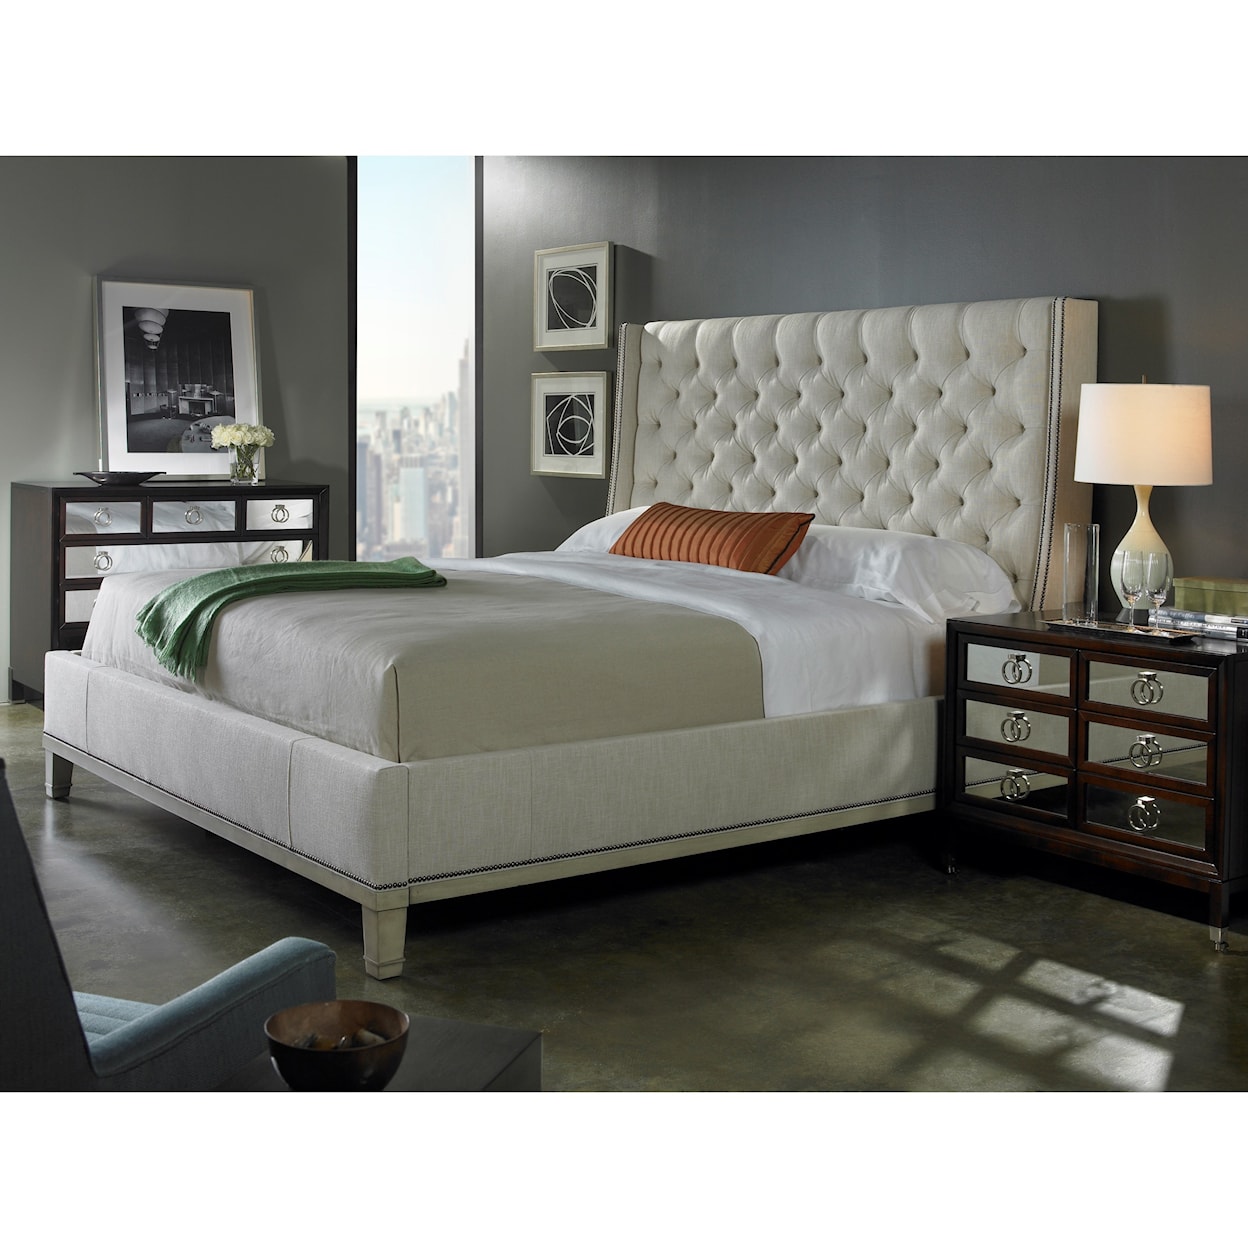 Vanguard Furniture Michael Weiss Cleo Queen Bed